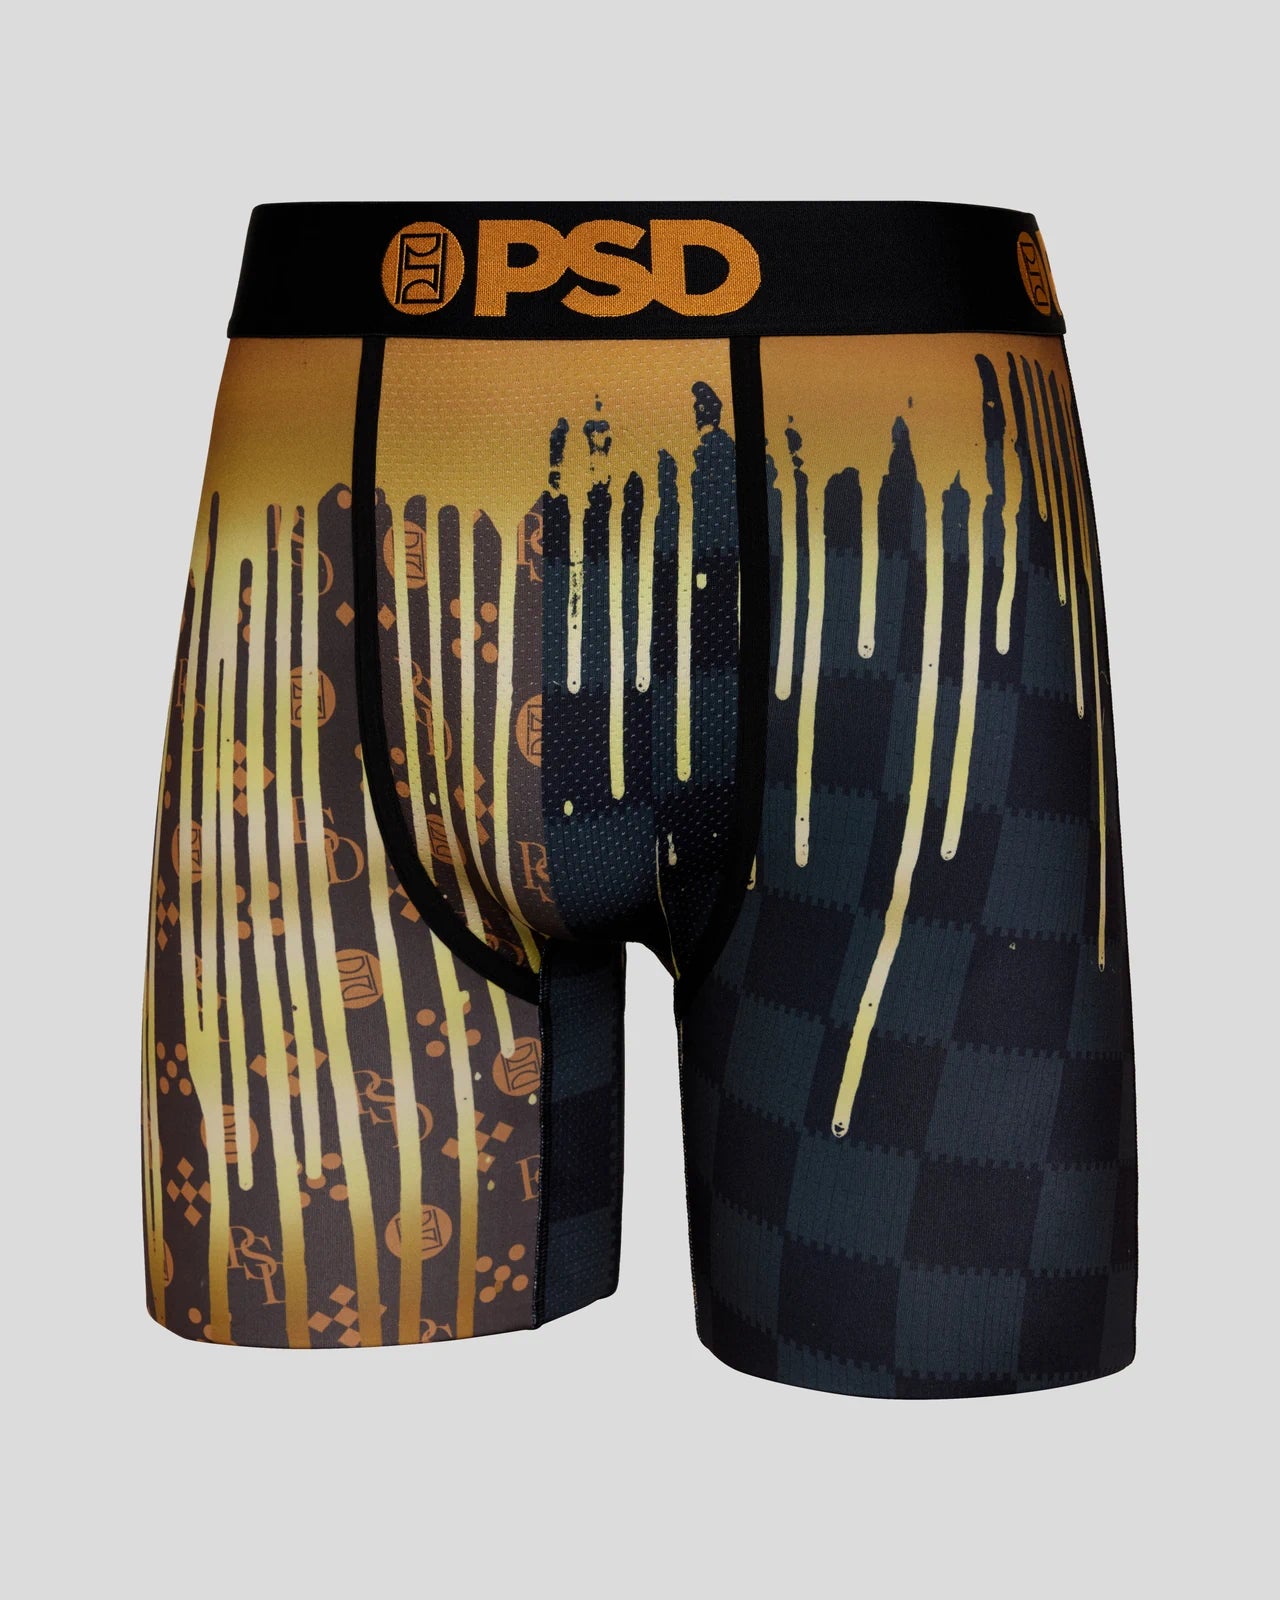 Ja Morant - 🔥🔥🔥 PSD Underwear #PSDPartner